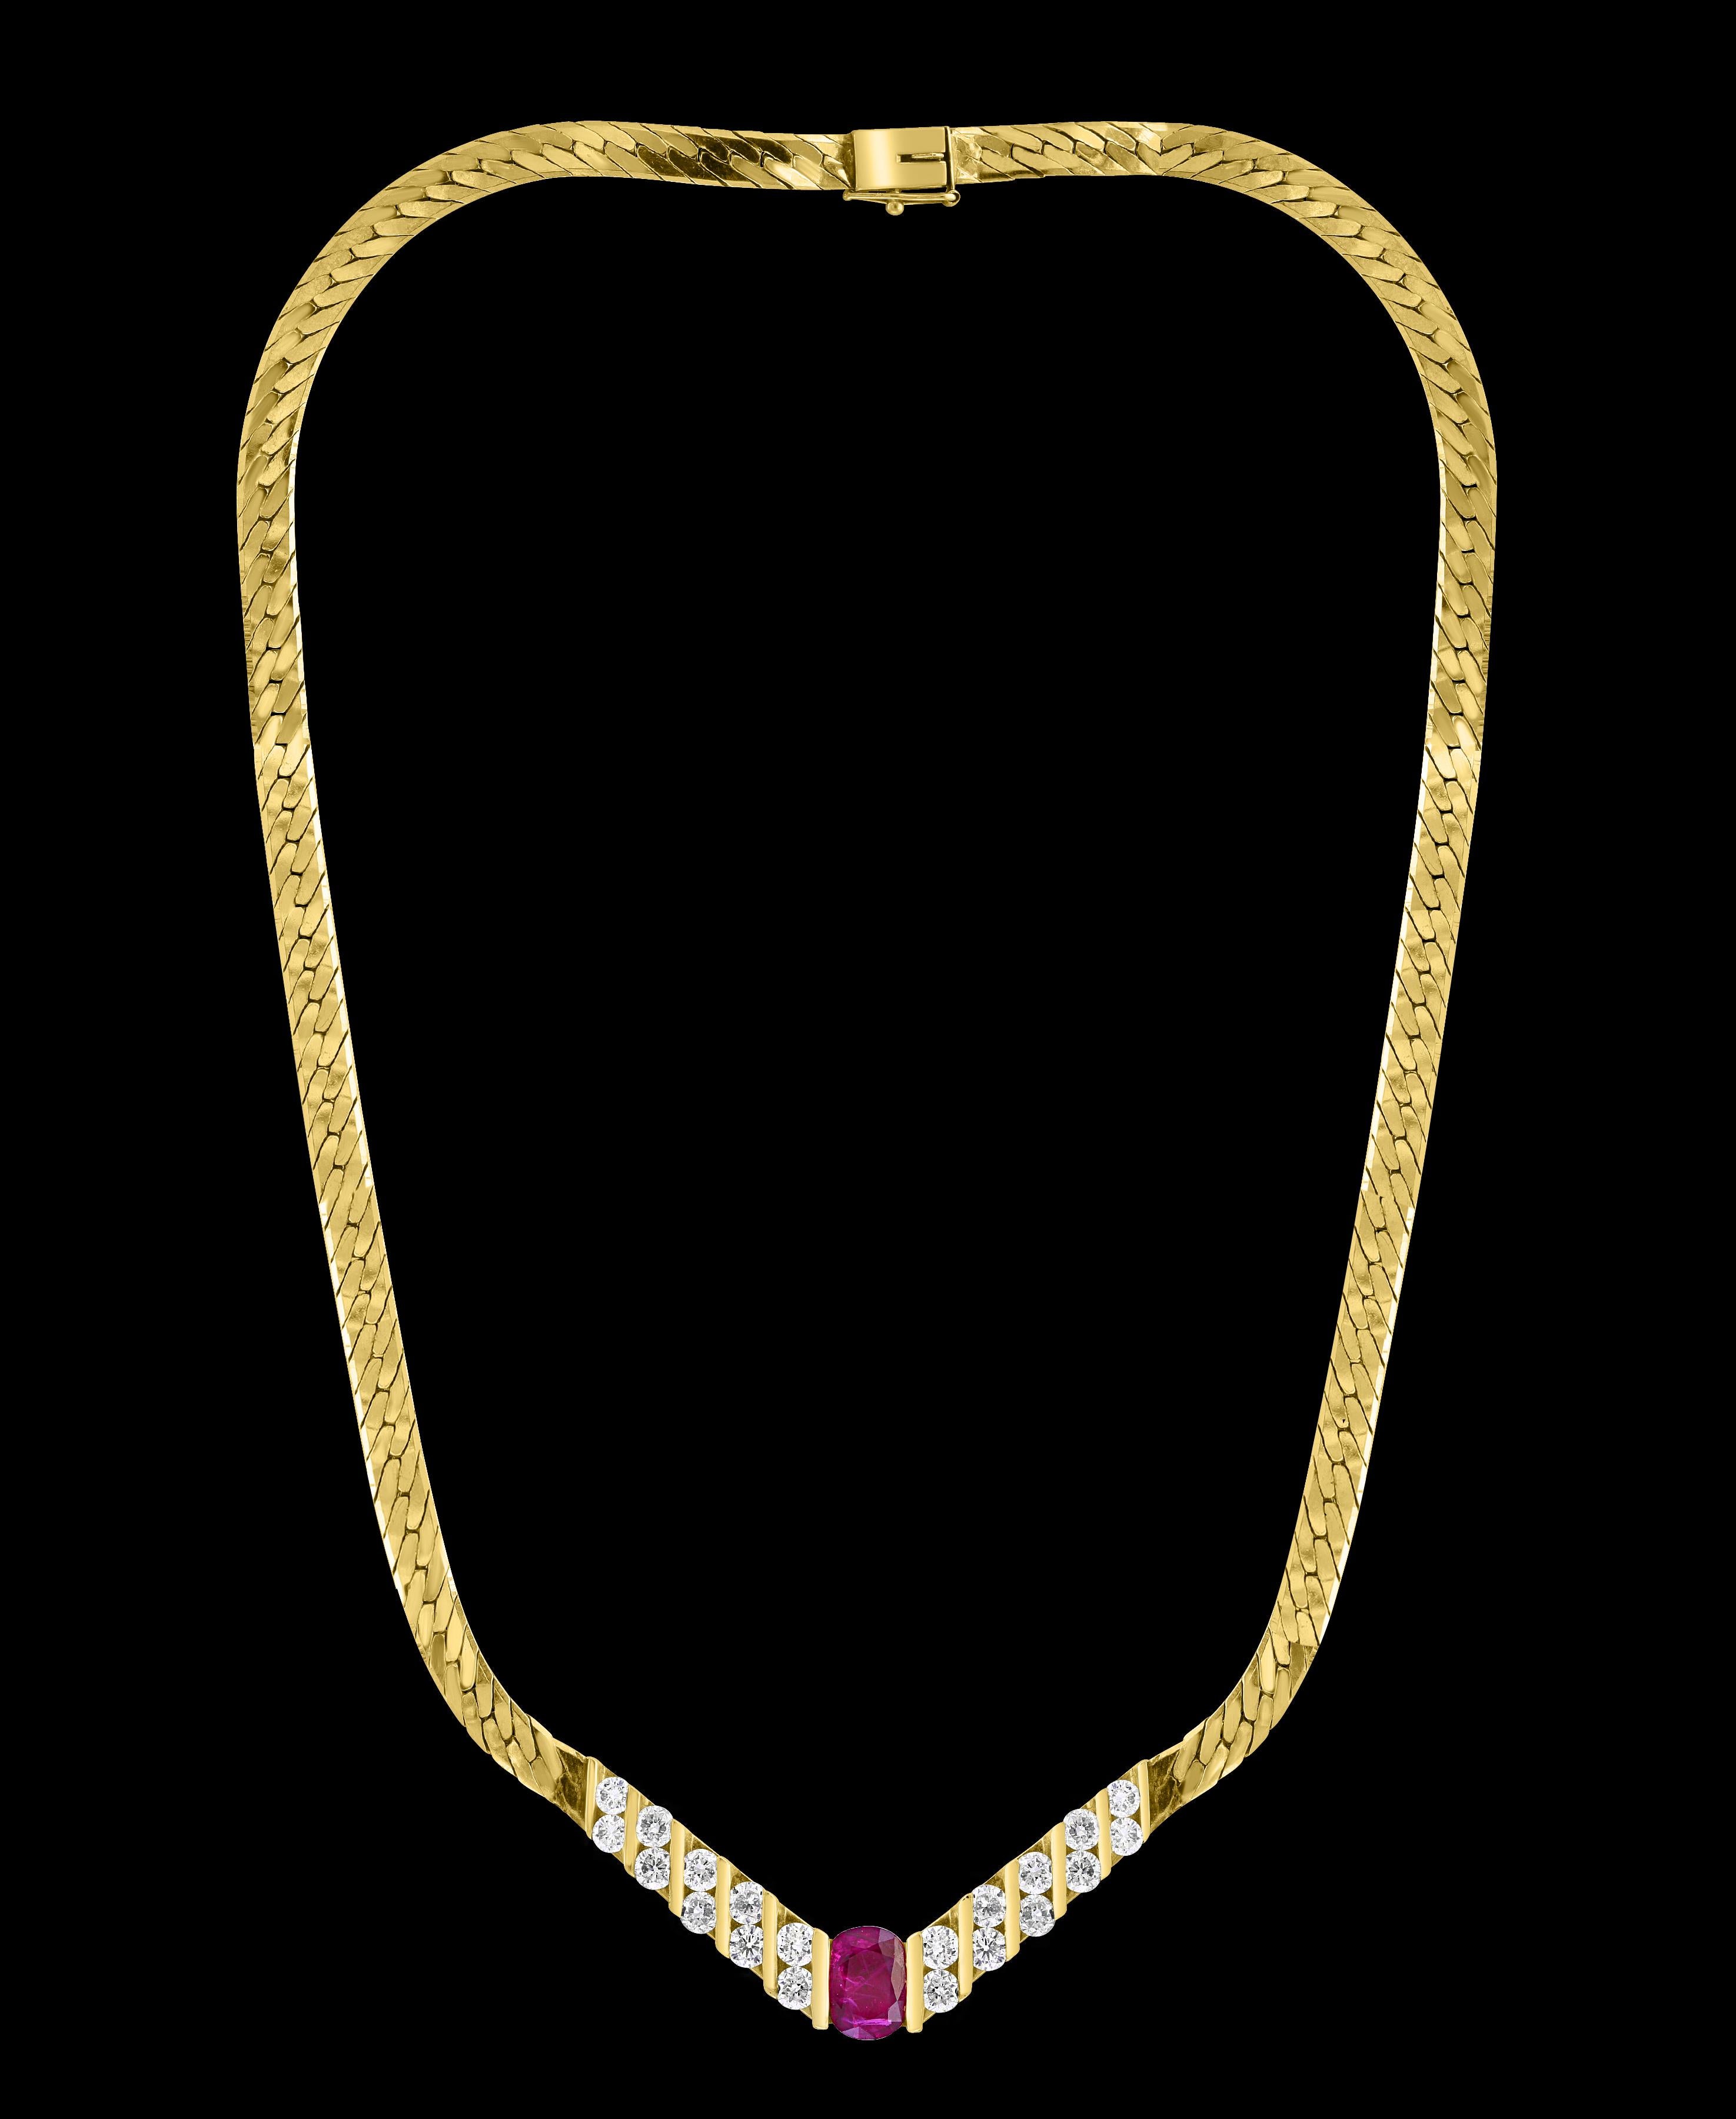 GIA-zertifiziert 3 Karat natürlicher ovaler  Rubin & Diamant-Anhänger Halskette 14 Karat  Gelbgold
Diese spektakuläre Anhänger-Halskette  bestehend aus einem einzigen Oval  Form Natürlich  Rubin etwa 3 Karat.  Die  Rubinrot  ist umgeben von etwa 4